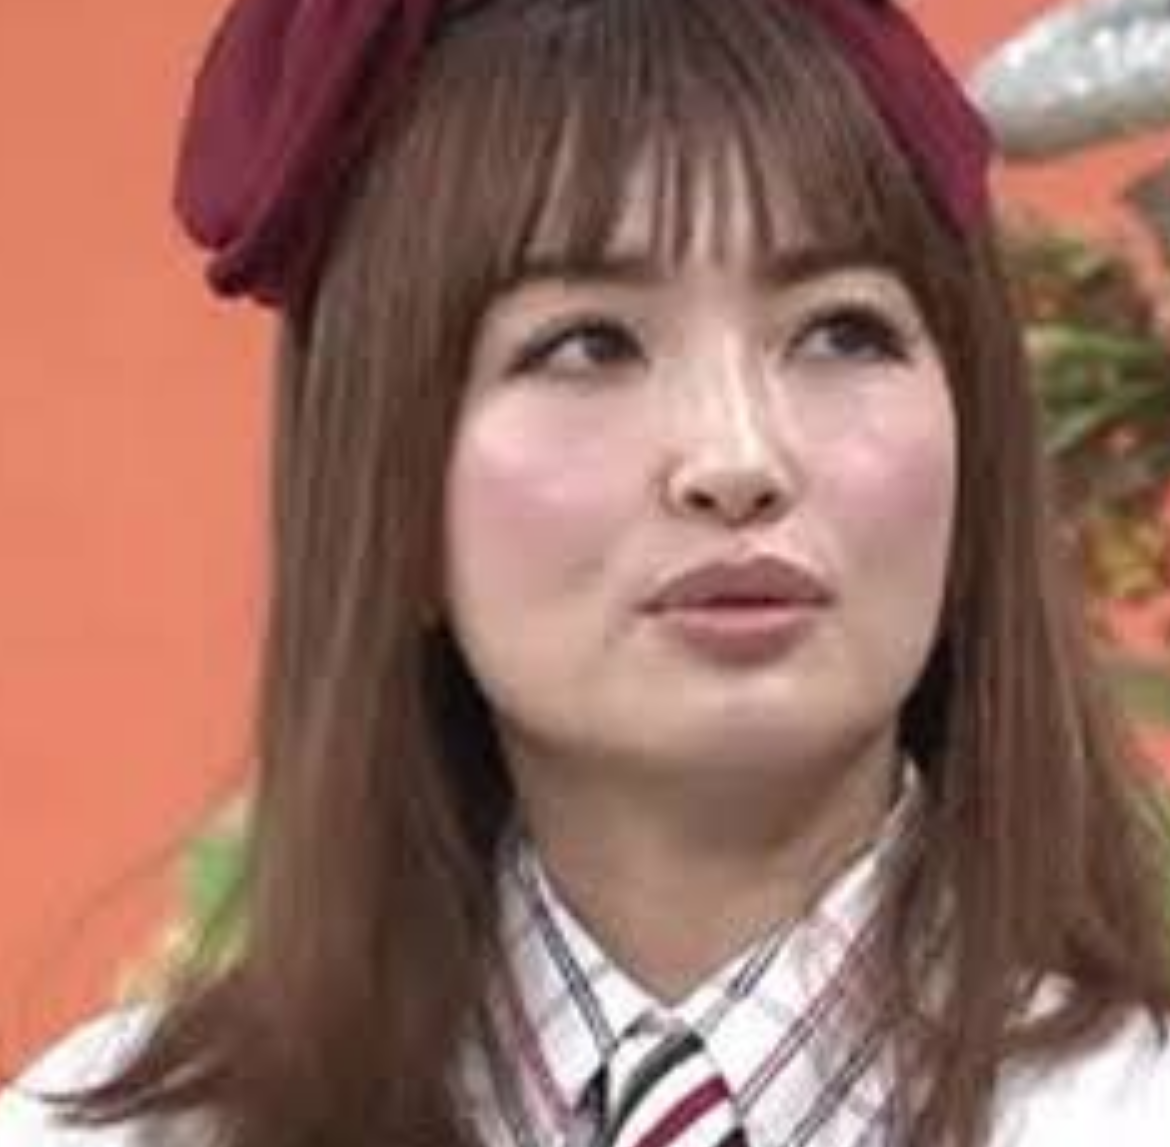 平子理沙 ほっぺたの形が不自然 芸能ニュース 速報チャンネル